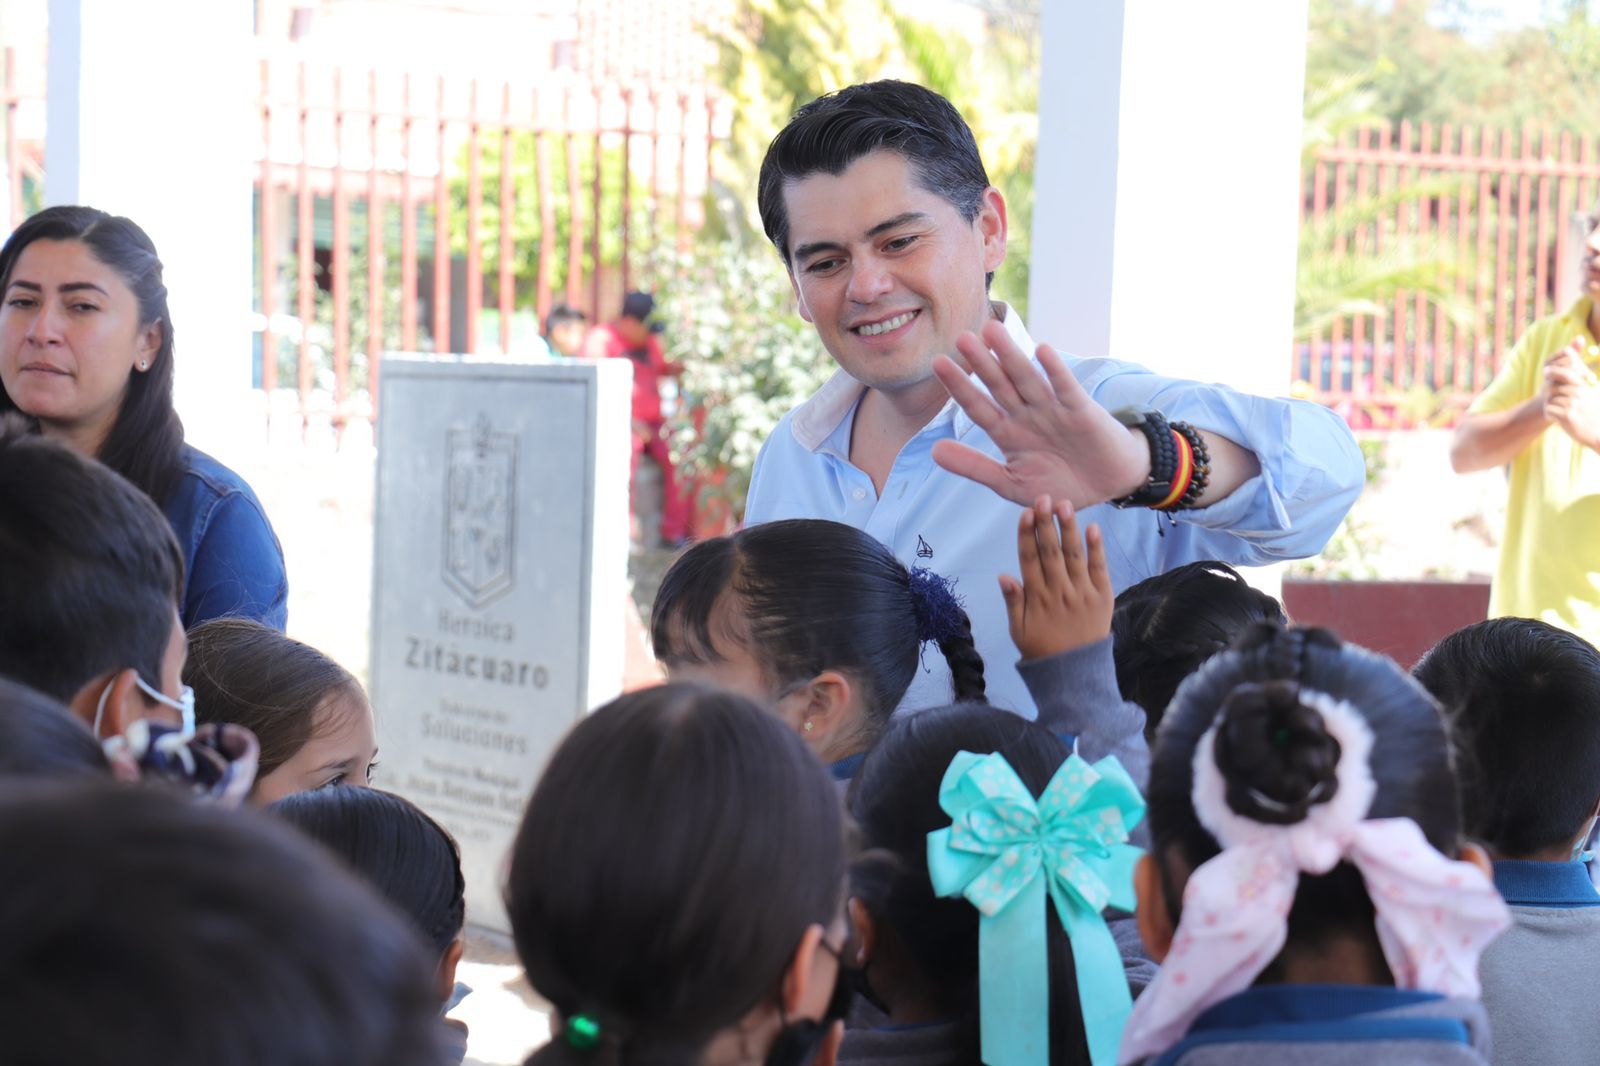 Inaugura #GobiernoDeSoluciones un domo más en beneficio de la educación.